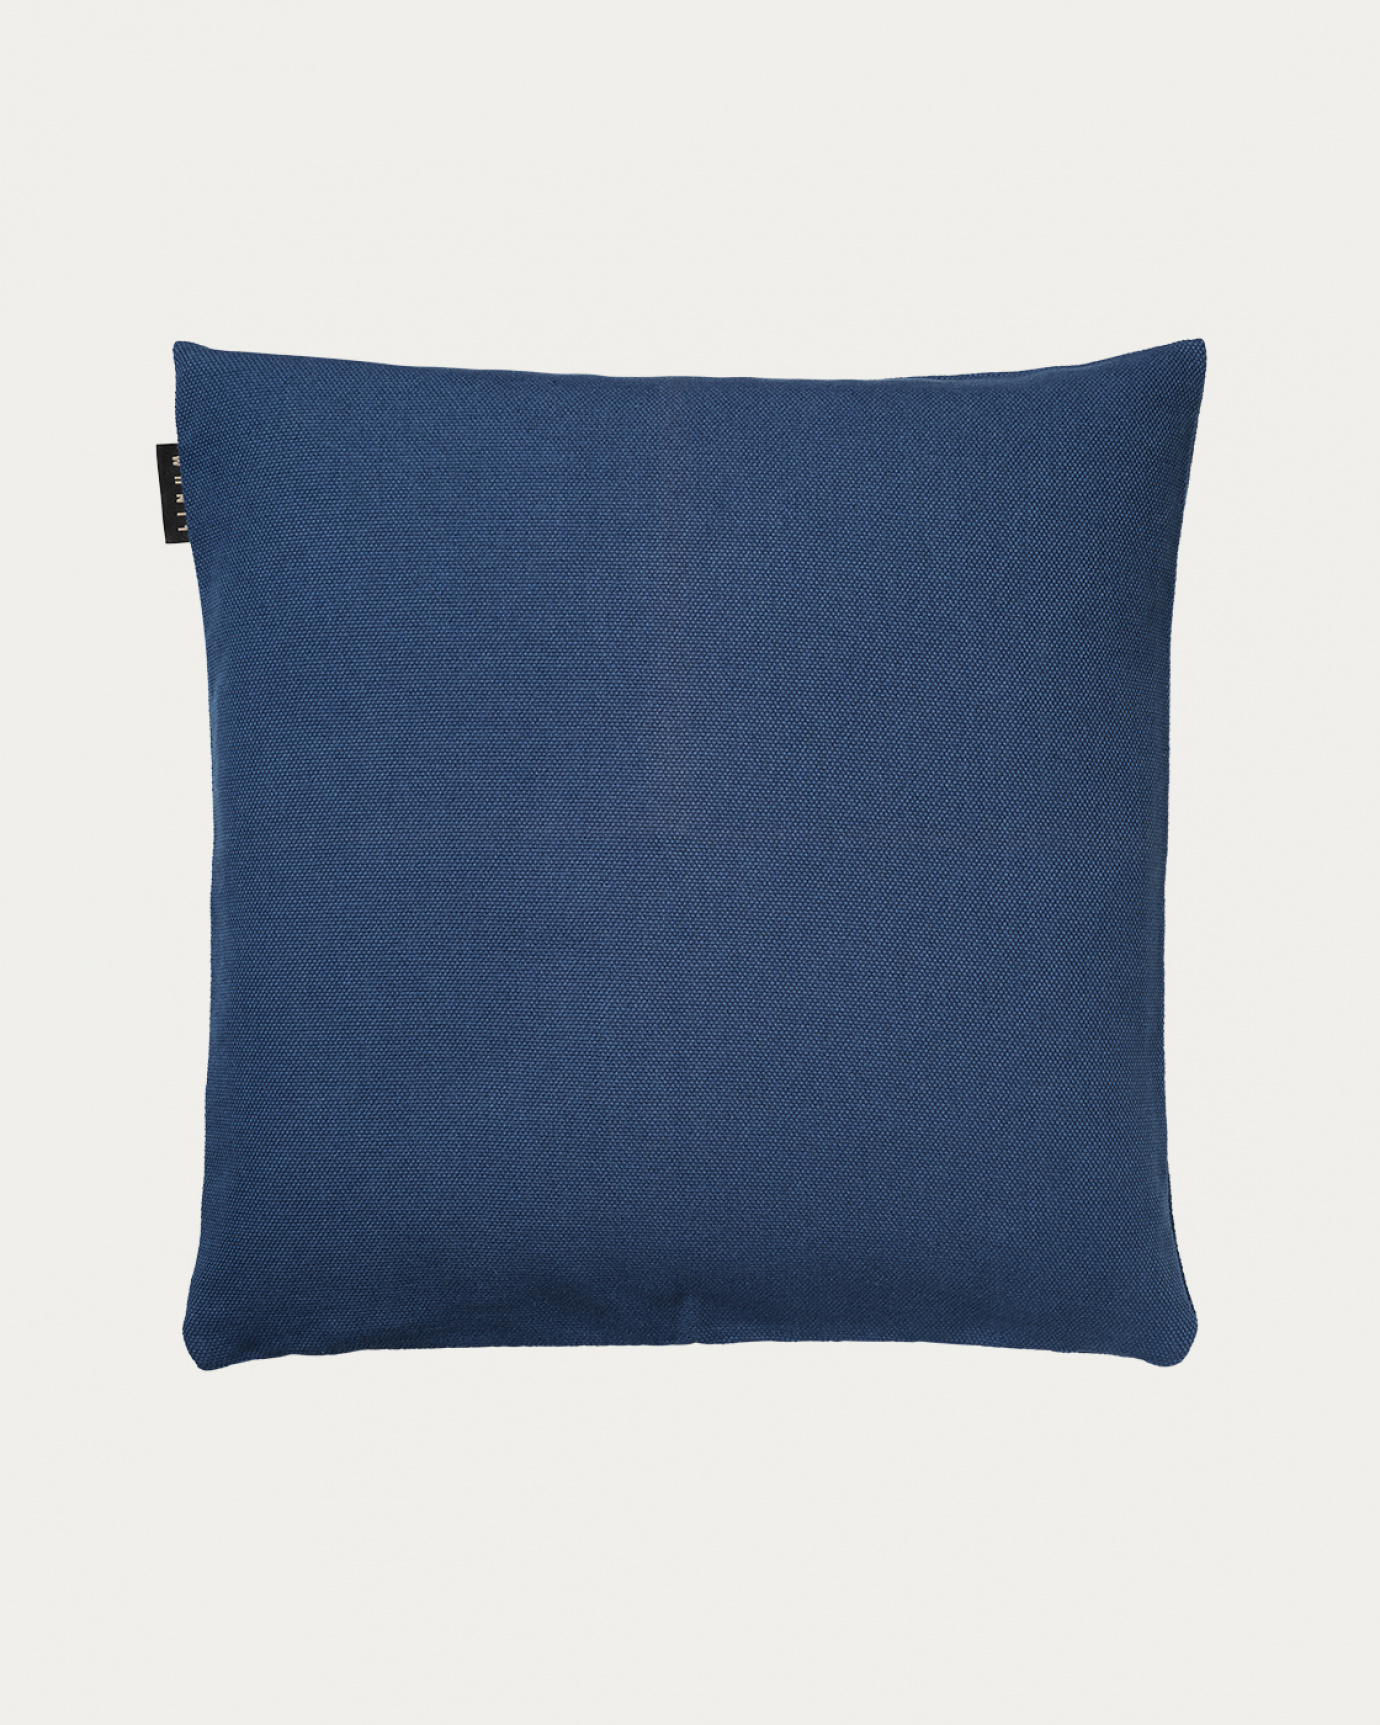 Produktbild indigoblau PEPPER Kissenhülle aus weicher Baumwolle von LINUM DESIGN. Einfach zu waschen und langlebig für Generationen. Größe 50x50 cm.